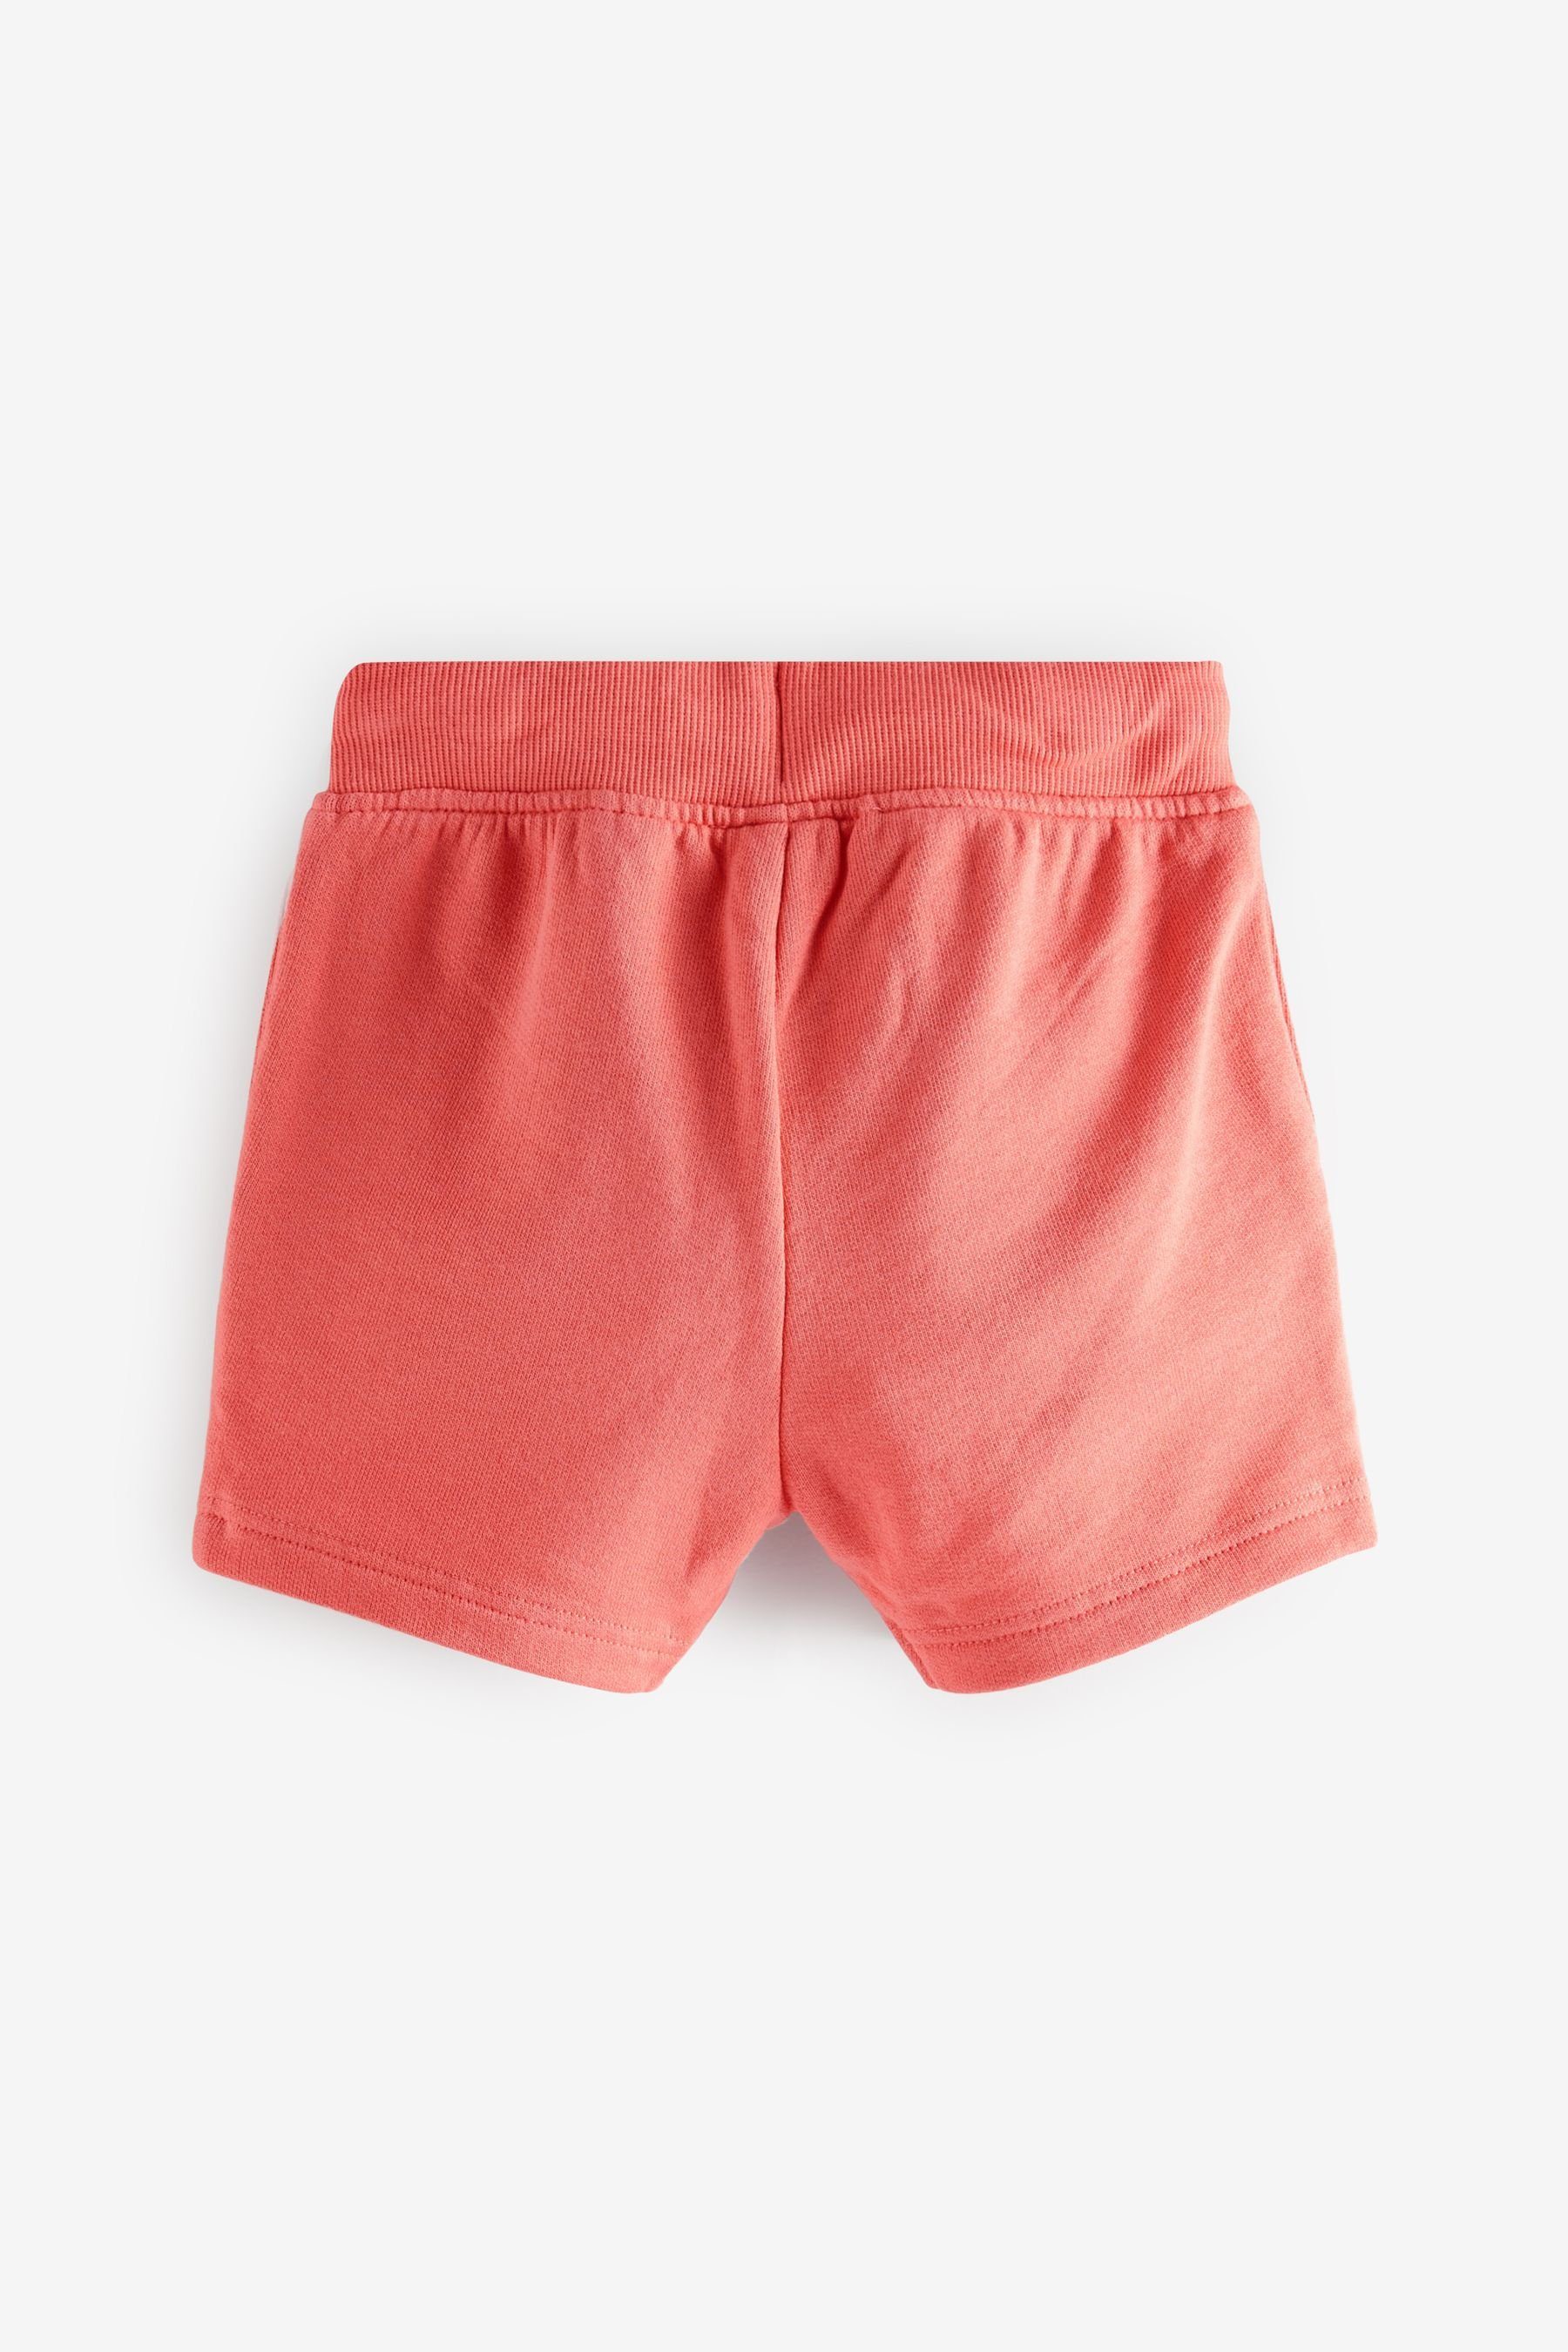 T-Shirt T-Shirt Red Shorts Coral Shorts Set Next aus Einfarbiges (2-tlg) & und